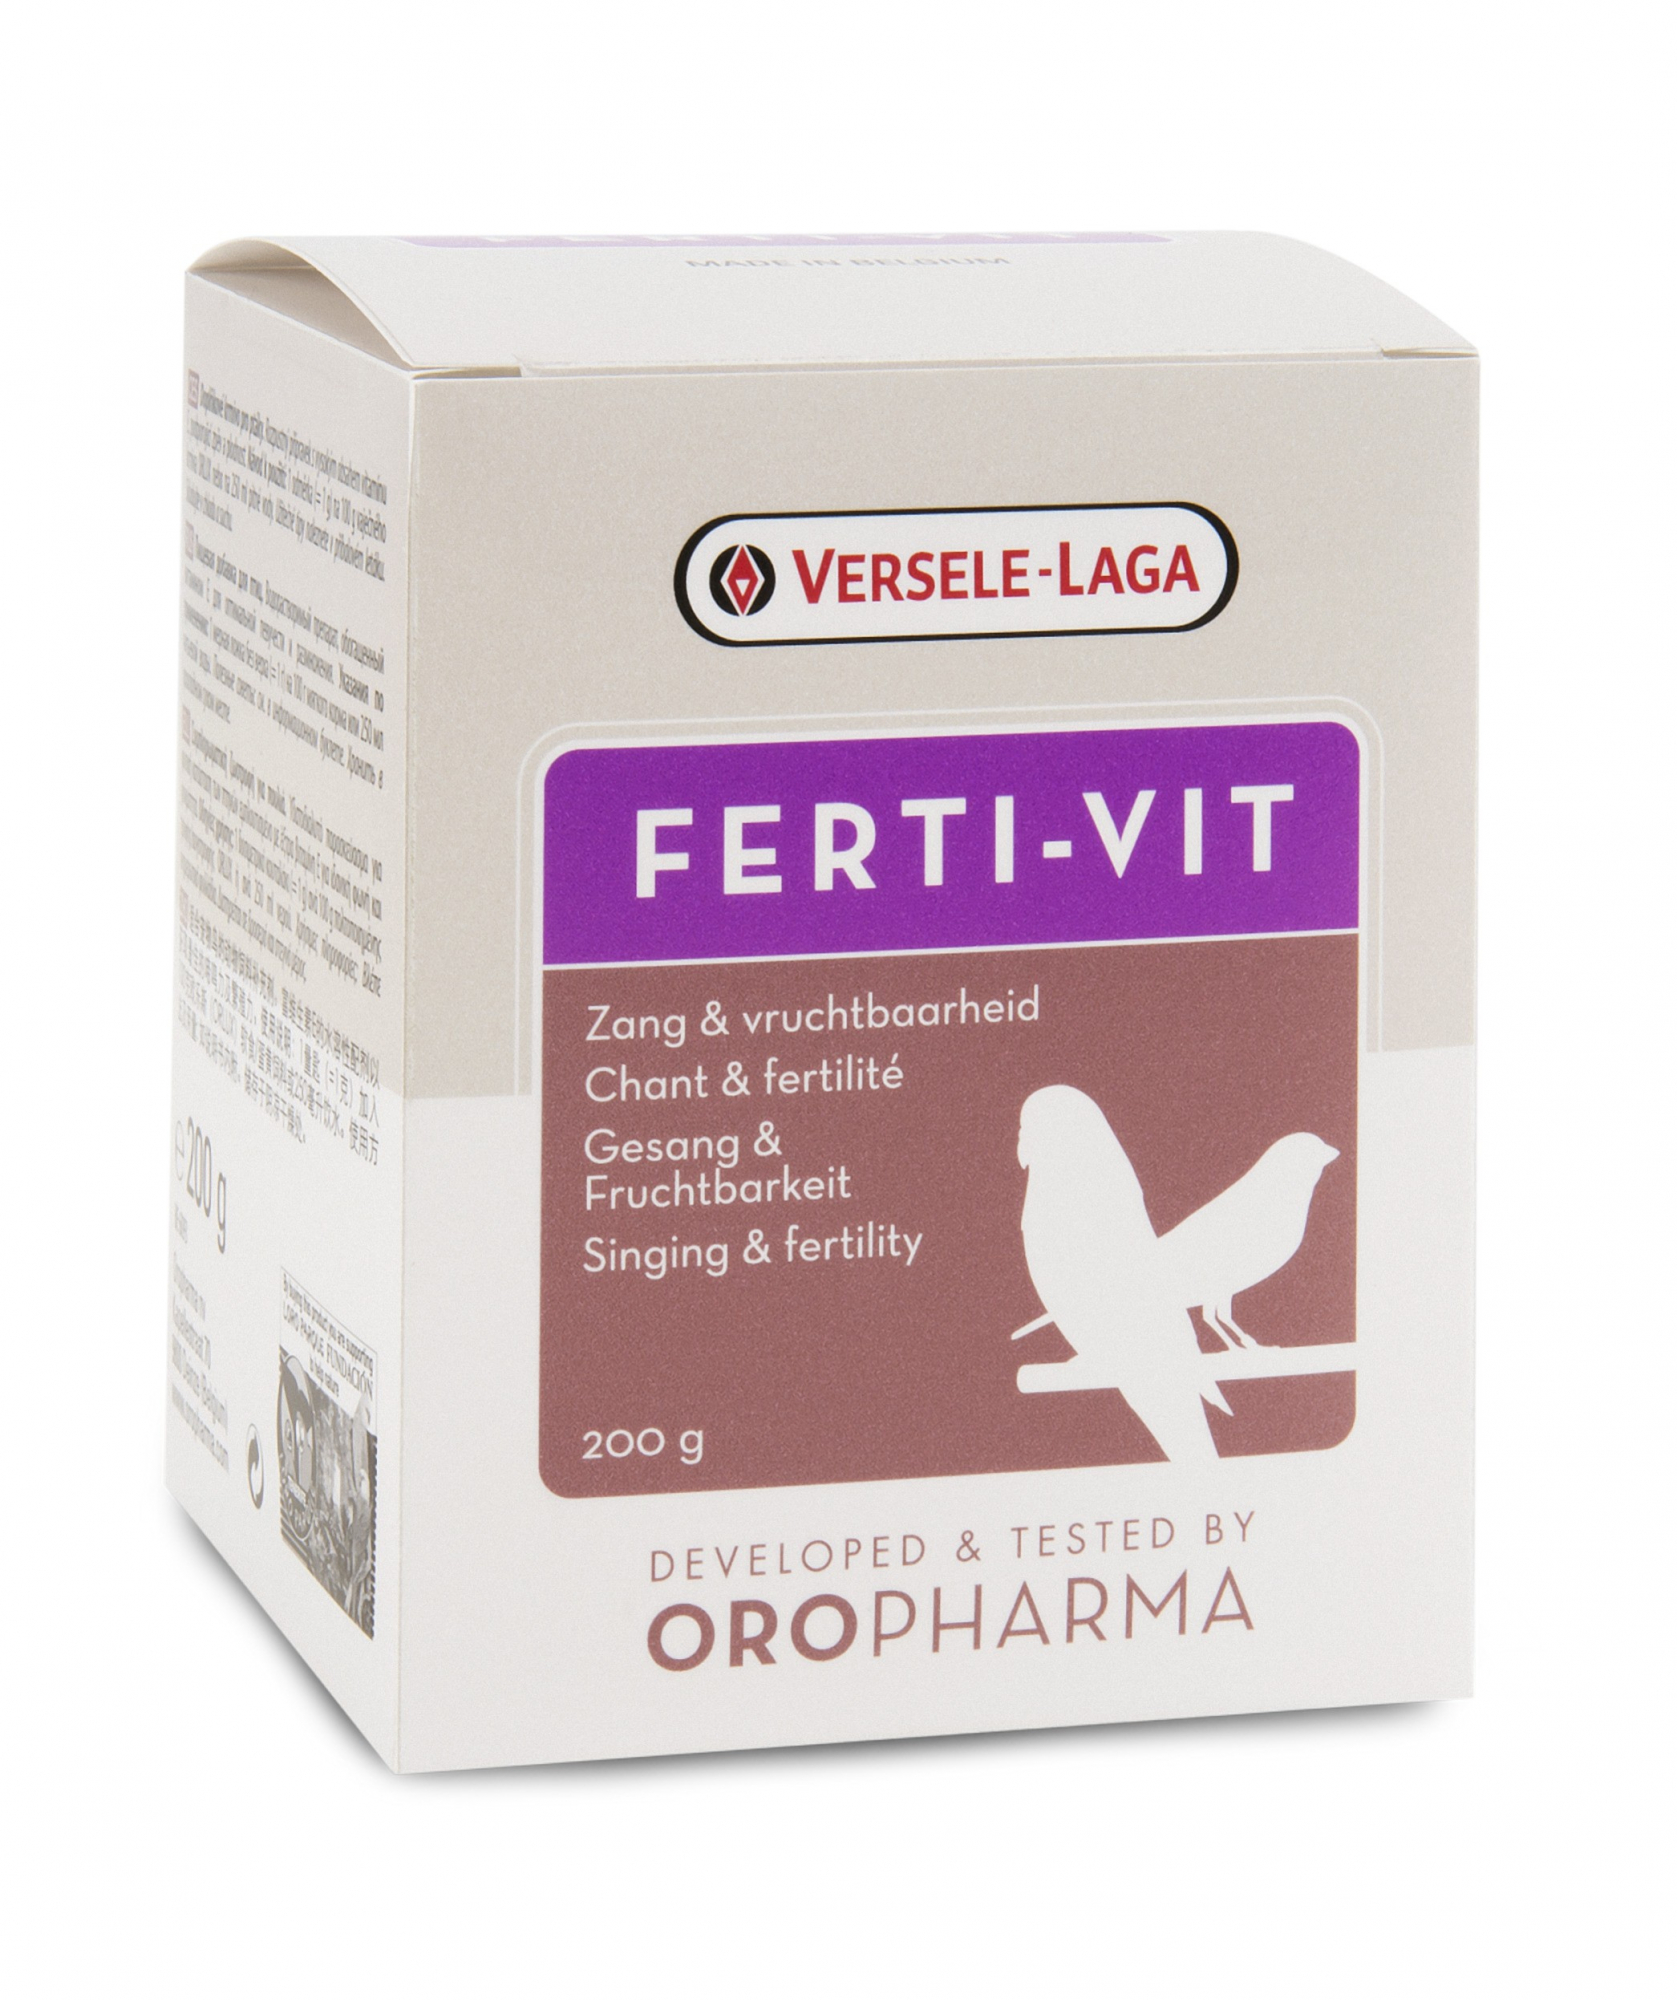 Oropharma Ferti-Vit Vitaminmischung für Fruchtbarkeit und Vitalität